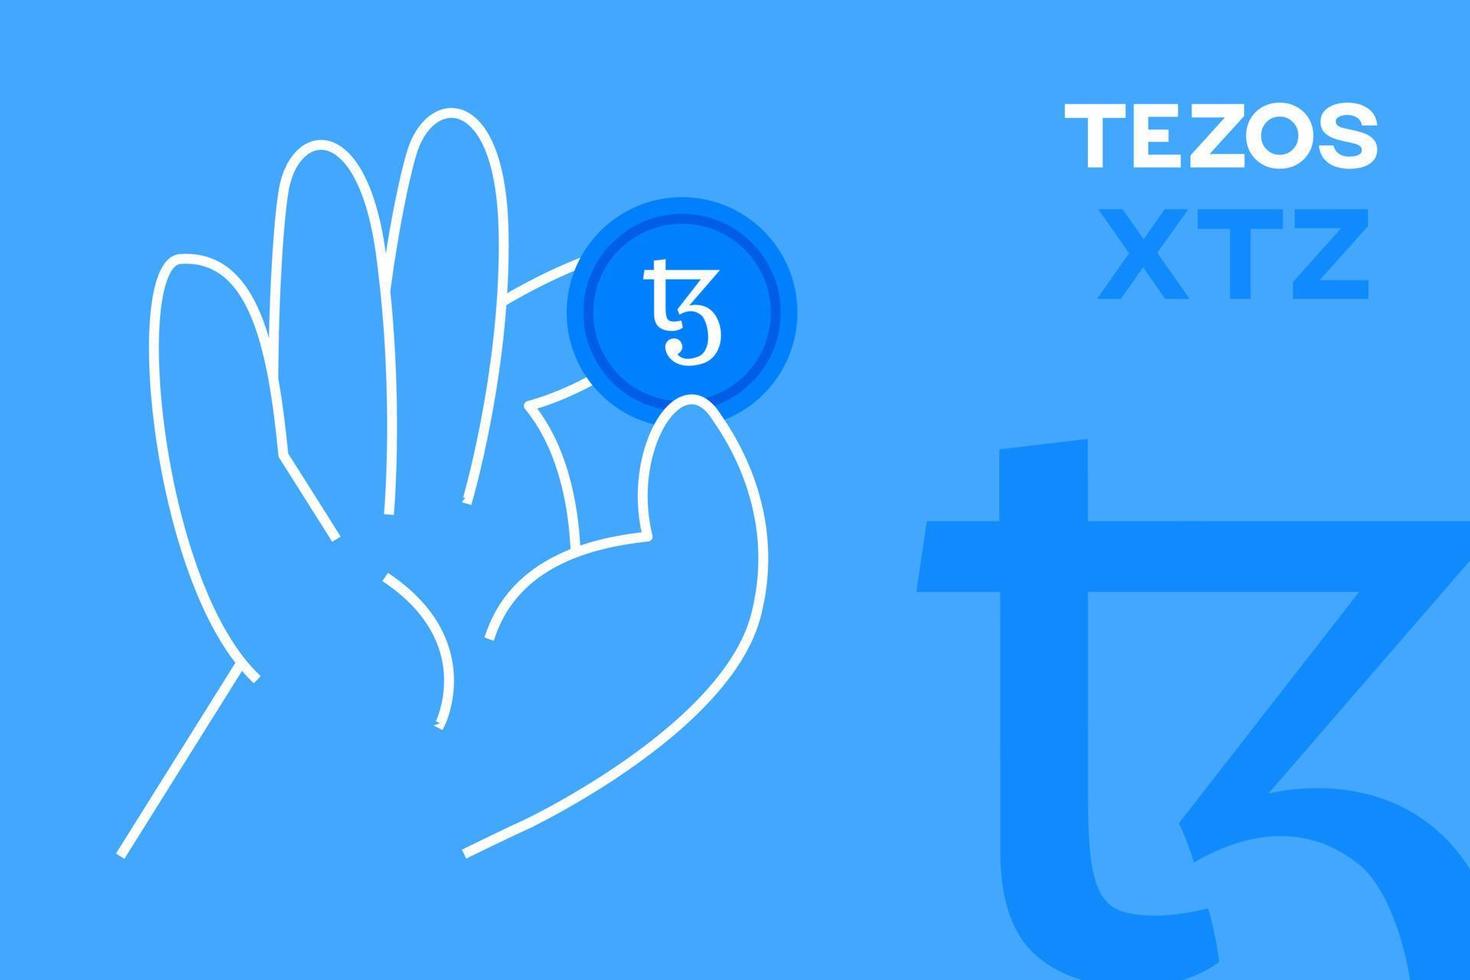 mano che tiene la moneta tezos, vettore modificabile in criptovaluta. logo xtz, banner design piatto crittografico. token xtz su sfondo blu, per app, web e animazione.